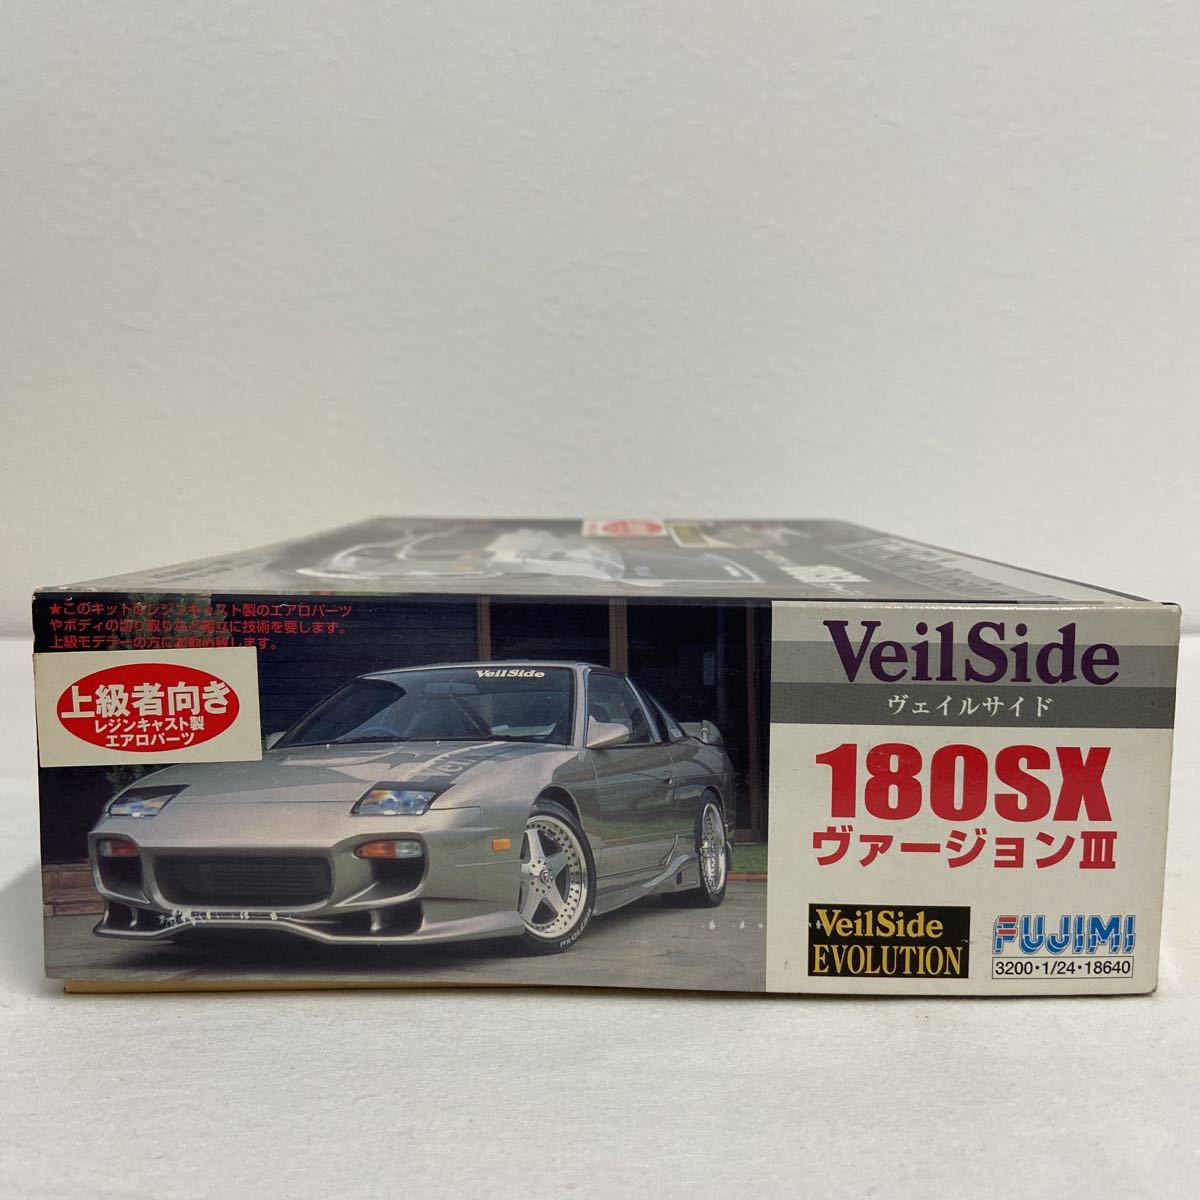 Fujimi Nissan Veilside 180SX ver.Ⅲ 1/24 Model Kit #24624 | eBay